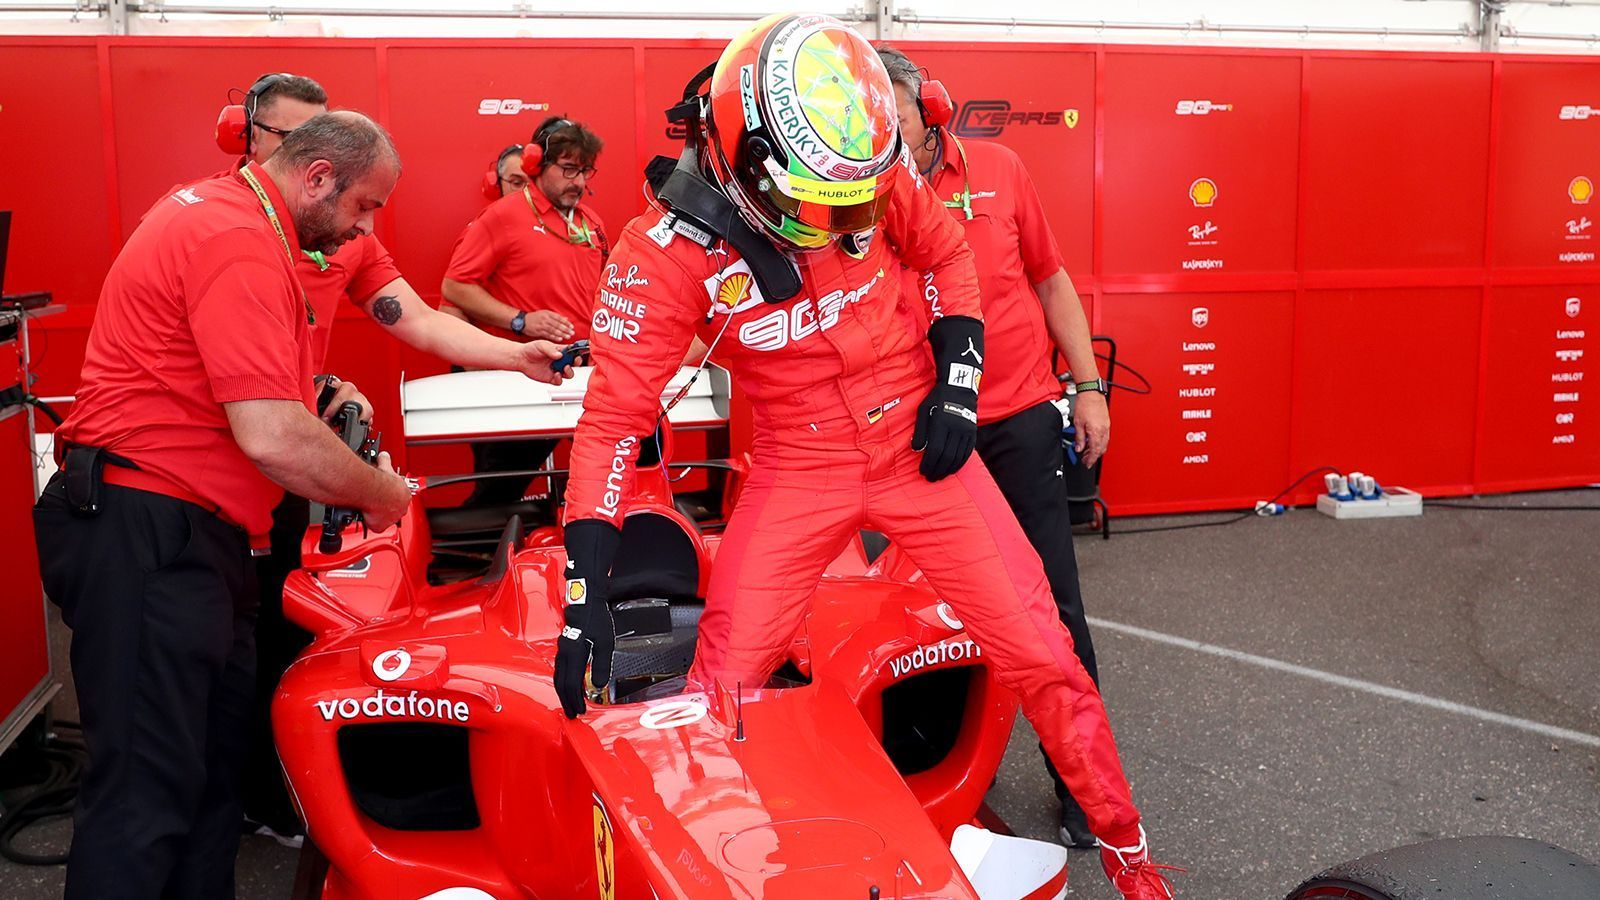 
                <strong>Mick Schumacher fährt im Weltmeister-Ferrari seines Vaters in Hockenheim</strong><br>
                Nach drei Runden ist die Fahrt schon wieder beendet. Mick steigt ist natürlich auch stilecht im roten Rennanzug unterwegs.
              